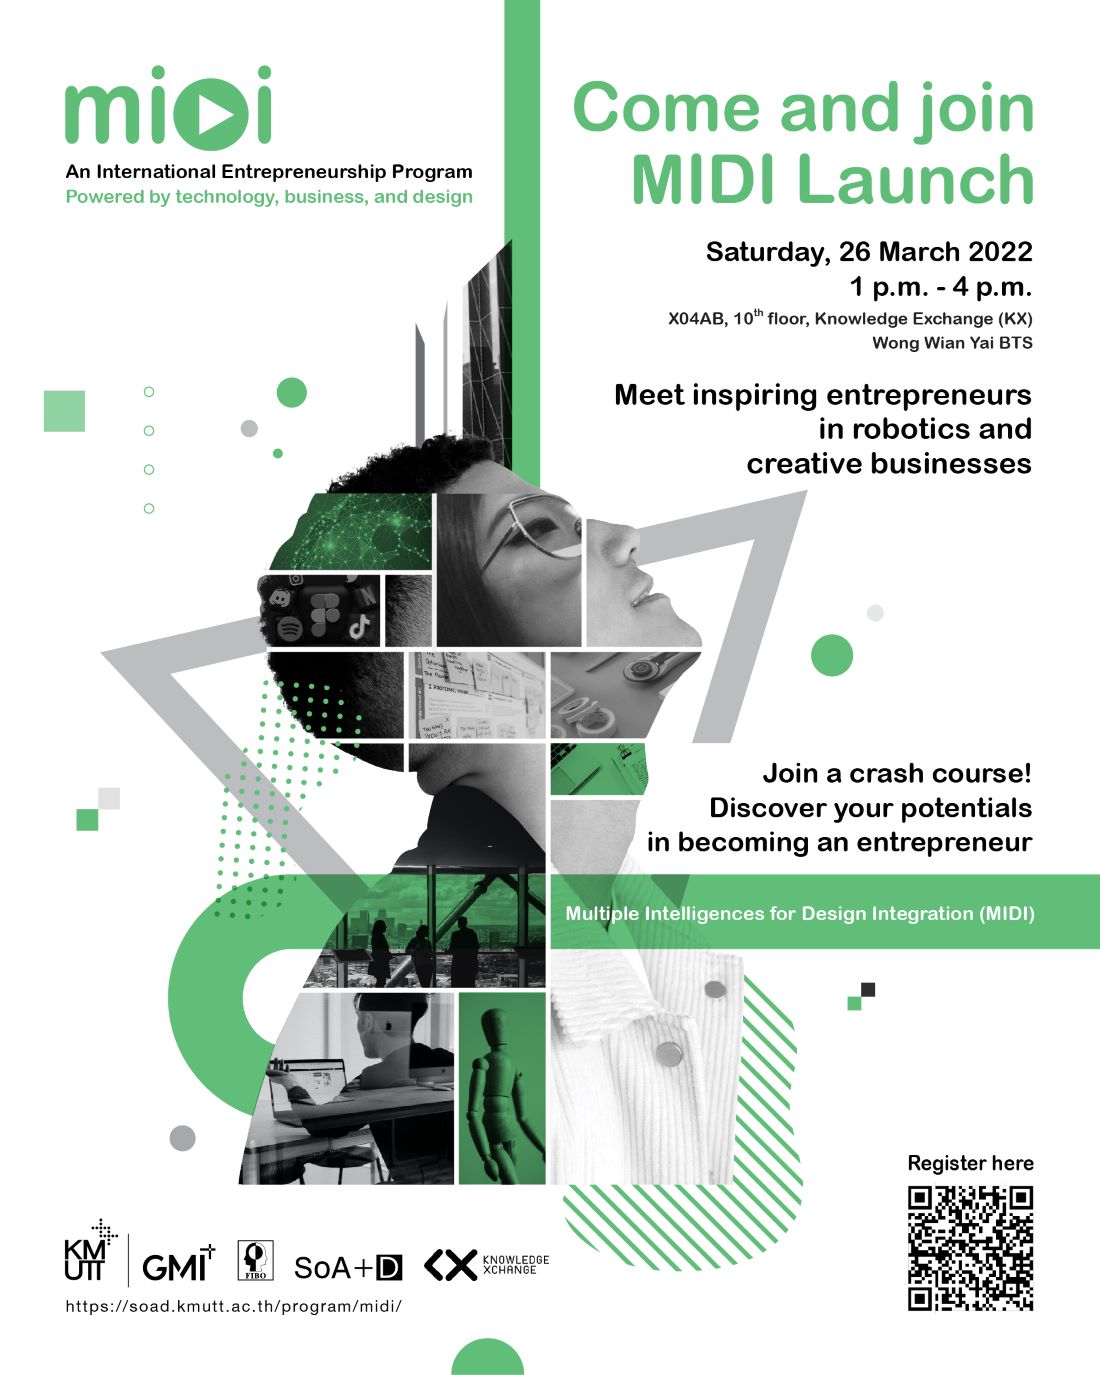 ชวนร่วมงานเปิดตัวหลักสูตรใหม่ MIDI Launch เส้นทางสู่ผู้ประกอบการ Start up ยุคใหม่ที่ตอบโจทย์โลกอนาคต พร้อมพบกับกิจกรรมน่าสนใจมากมาย!